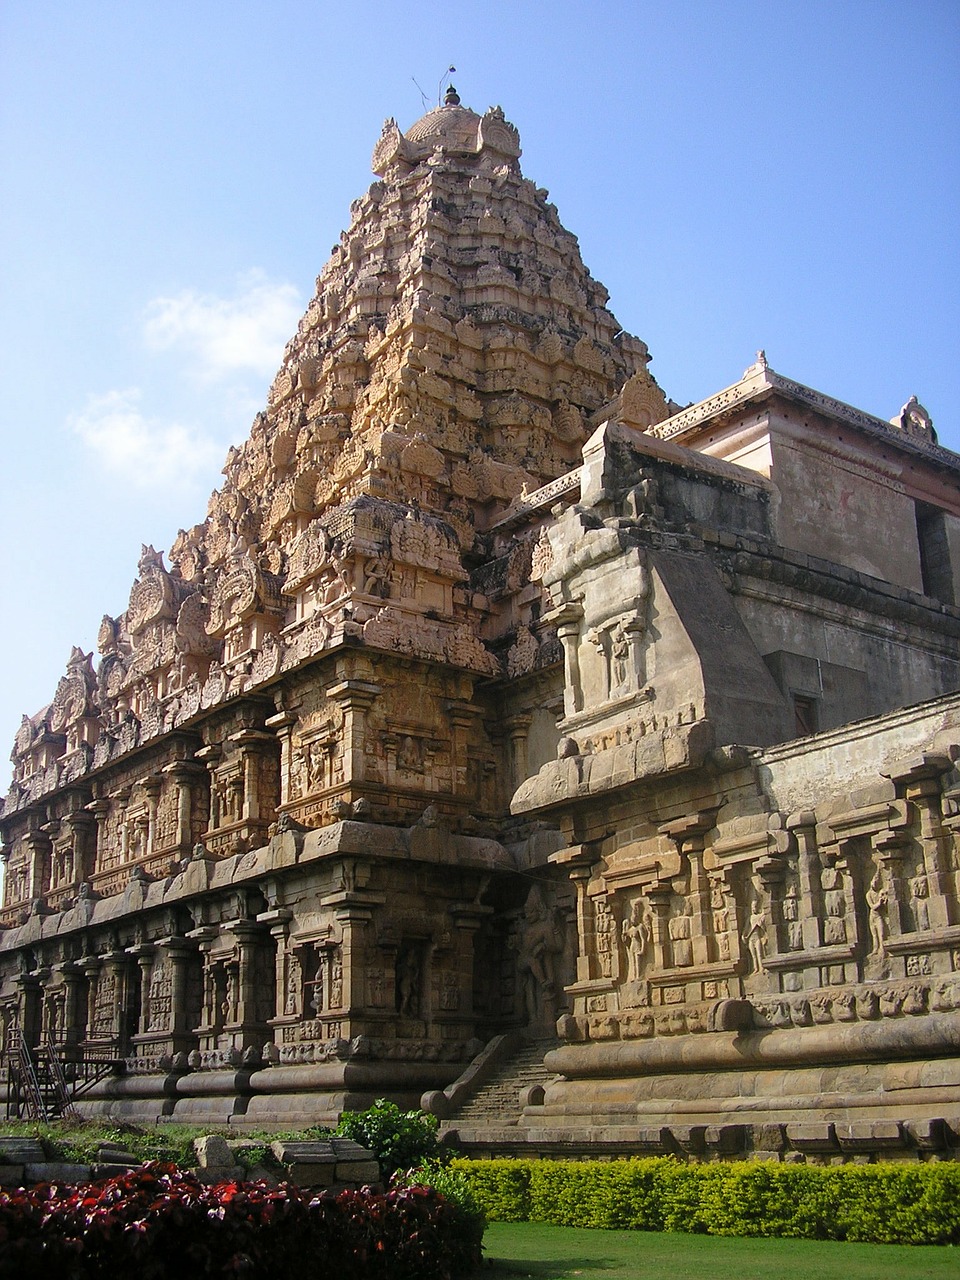 thanjavur india temple free photo